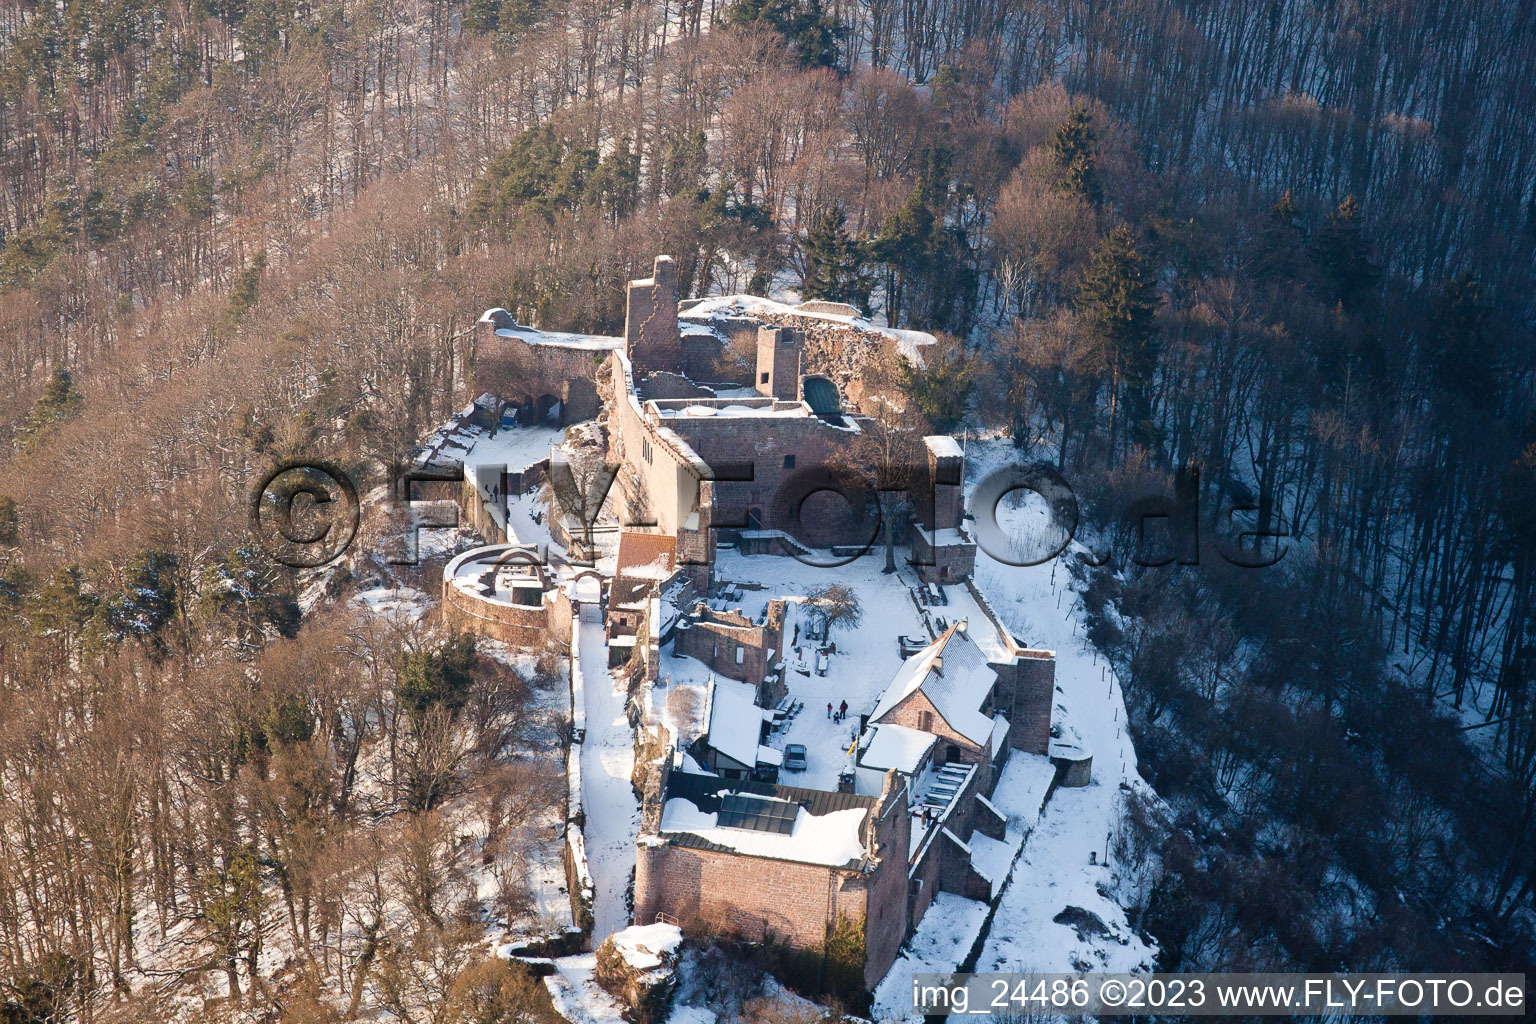 Madenbourg à Eschbach dans le département Rhénanie-Palatinat, Allemagne vue d'en haut